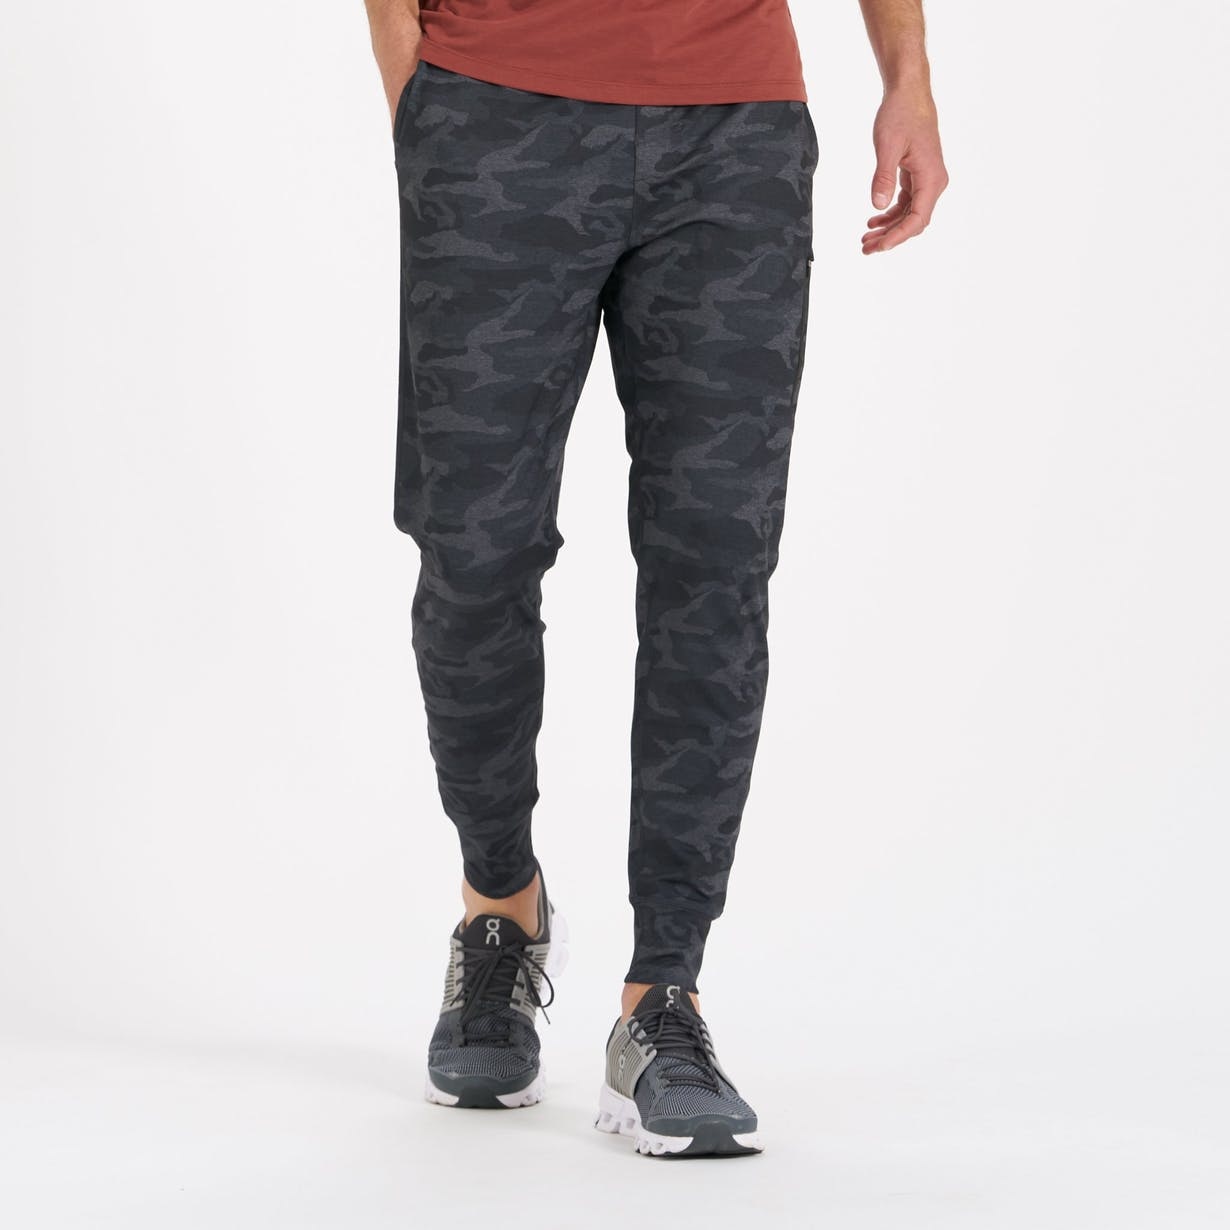 Men's Jogger Pants - Shop Joggers Online Now